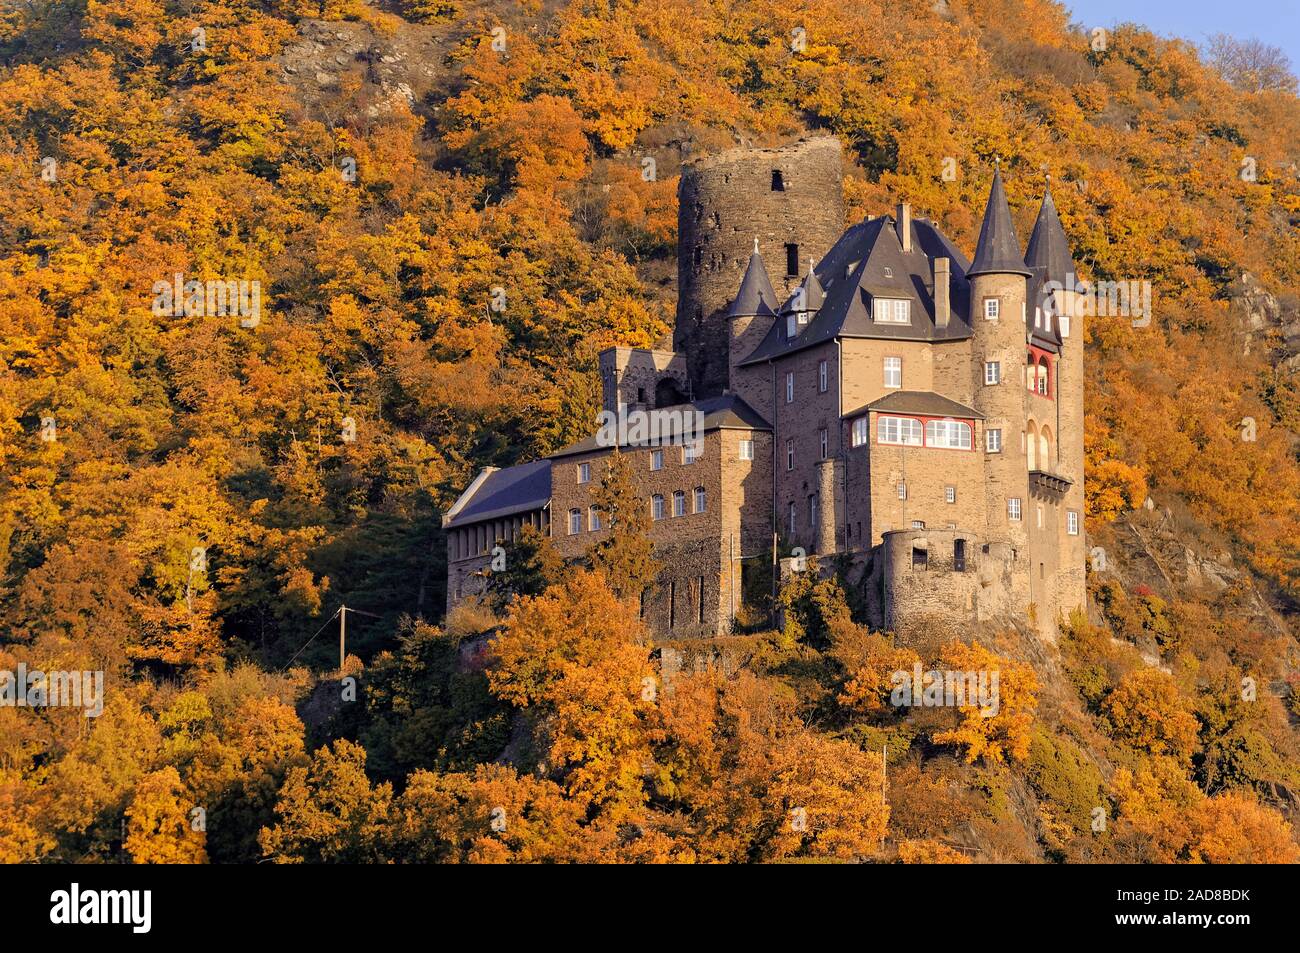 Castle Katz in autumn Stock Photo